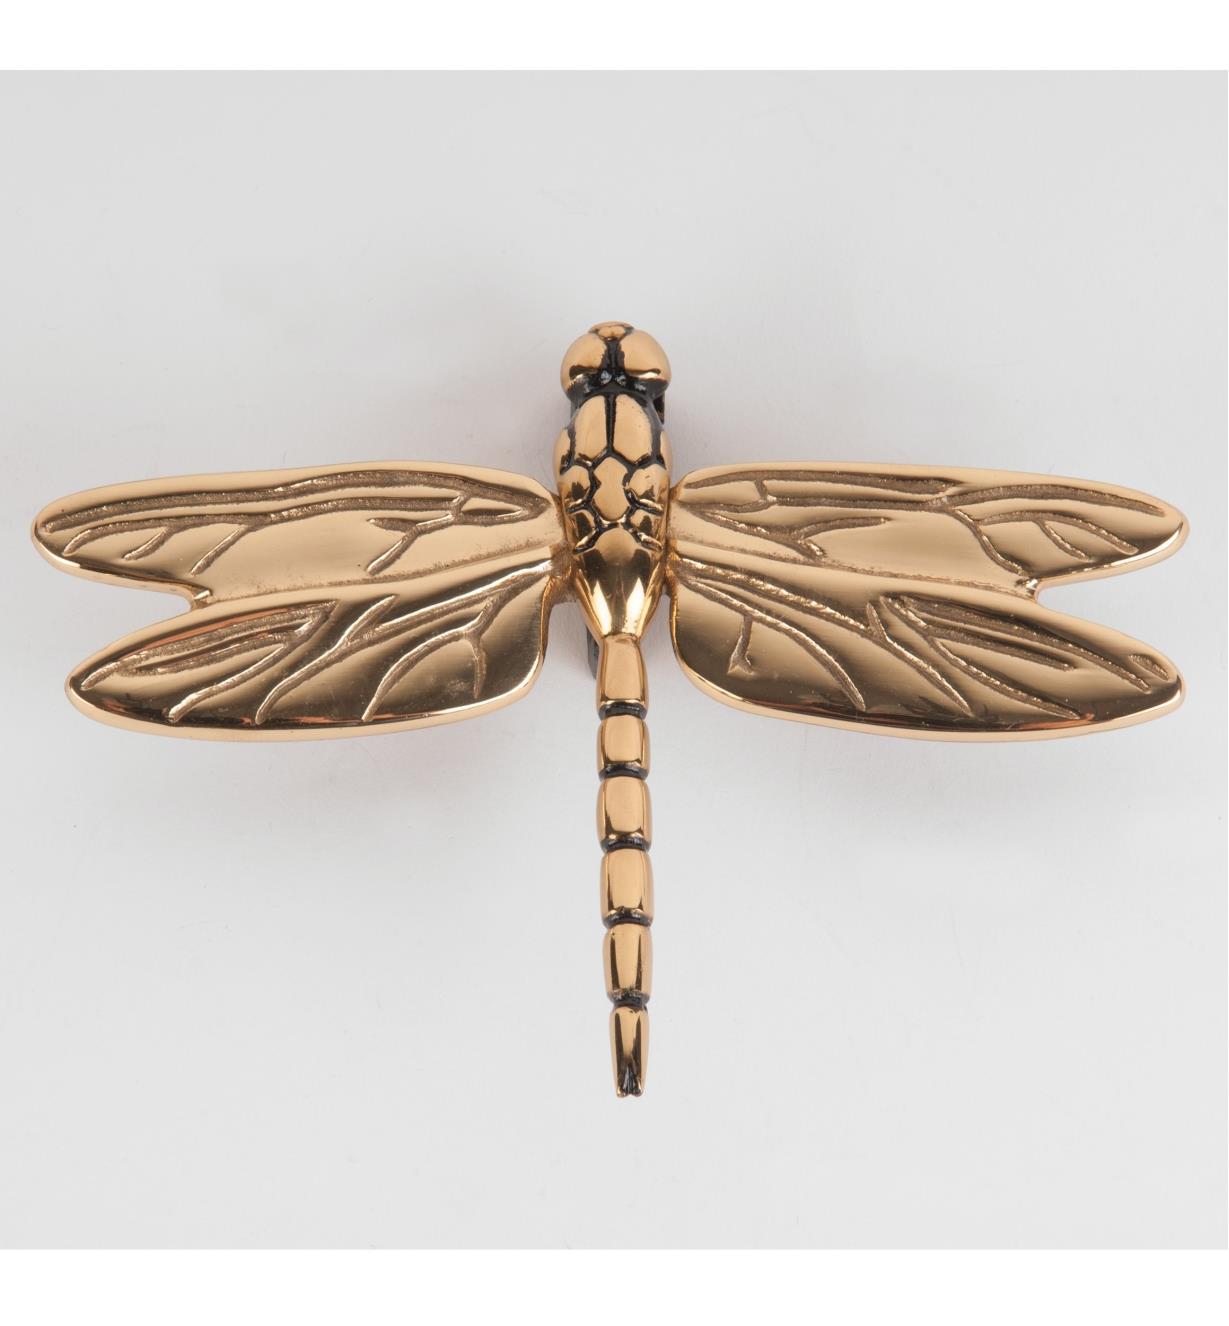 00W0812 - Polished Brass Dragonfly Door Knocker